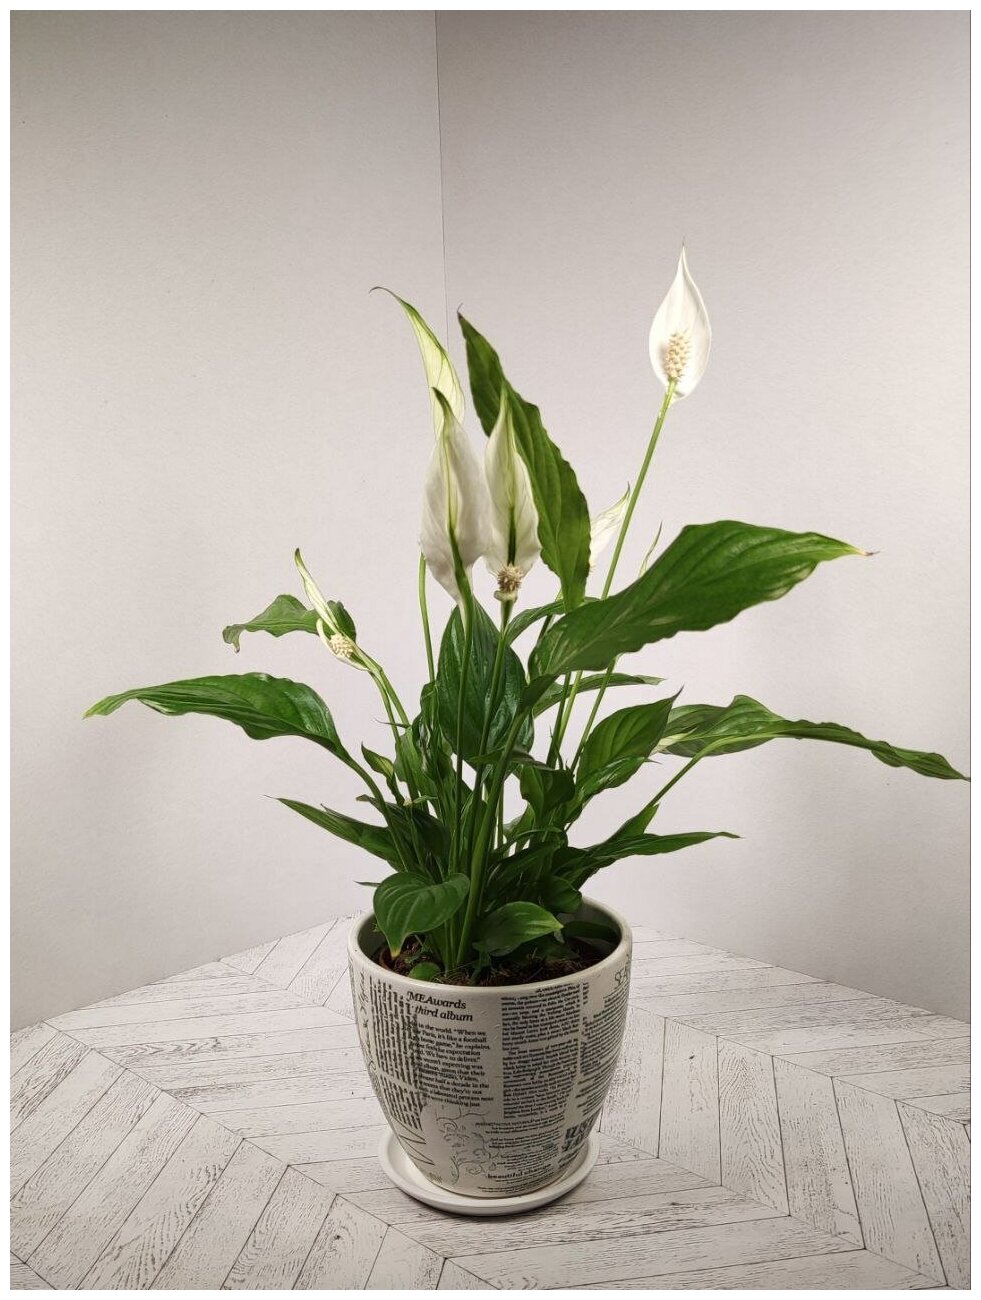 Спатифиллум (Женское Счастье) в белом керамическом горшке с рисунком "Газета" и поддоном, пересаженный D15. Комнатное растение для дома.